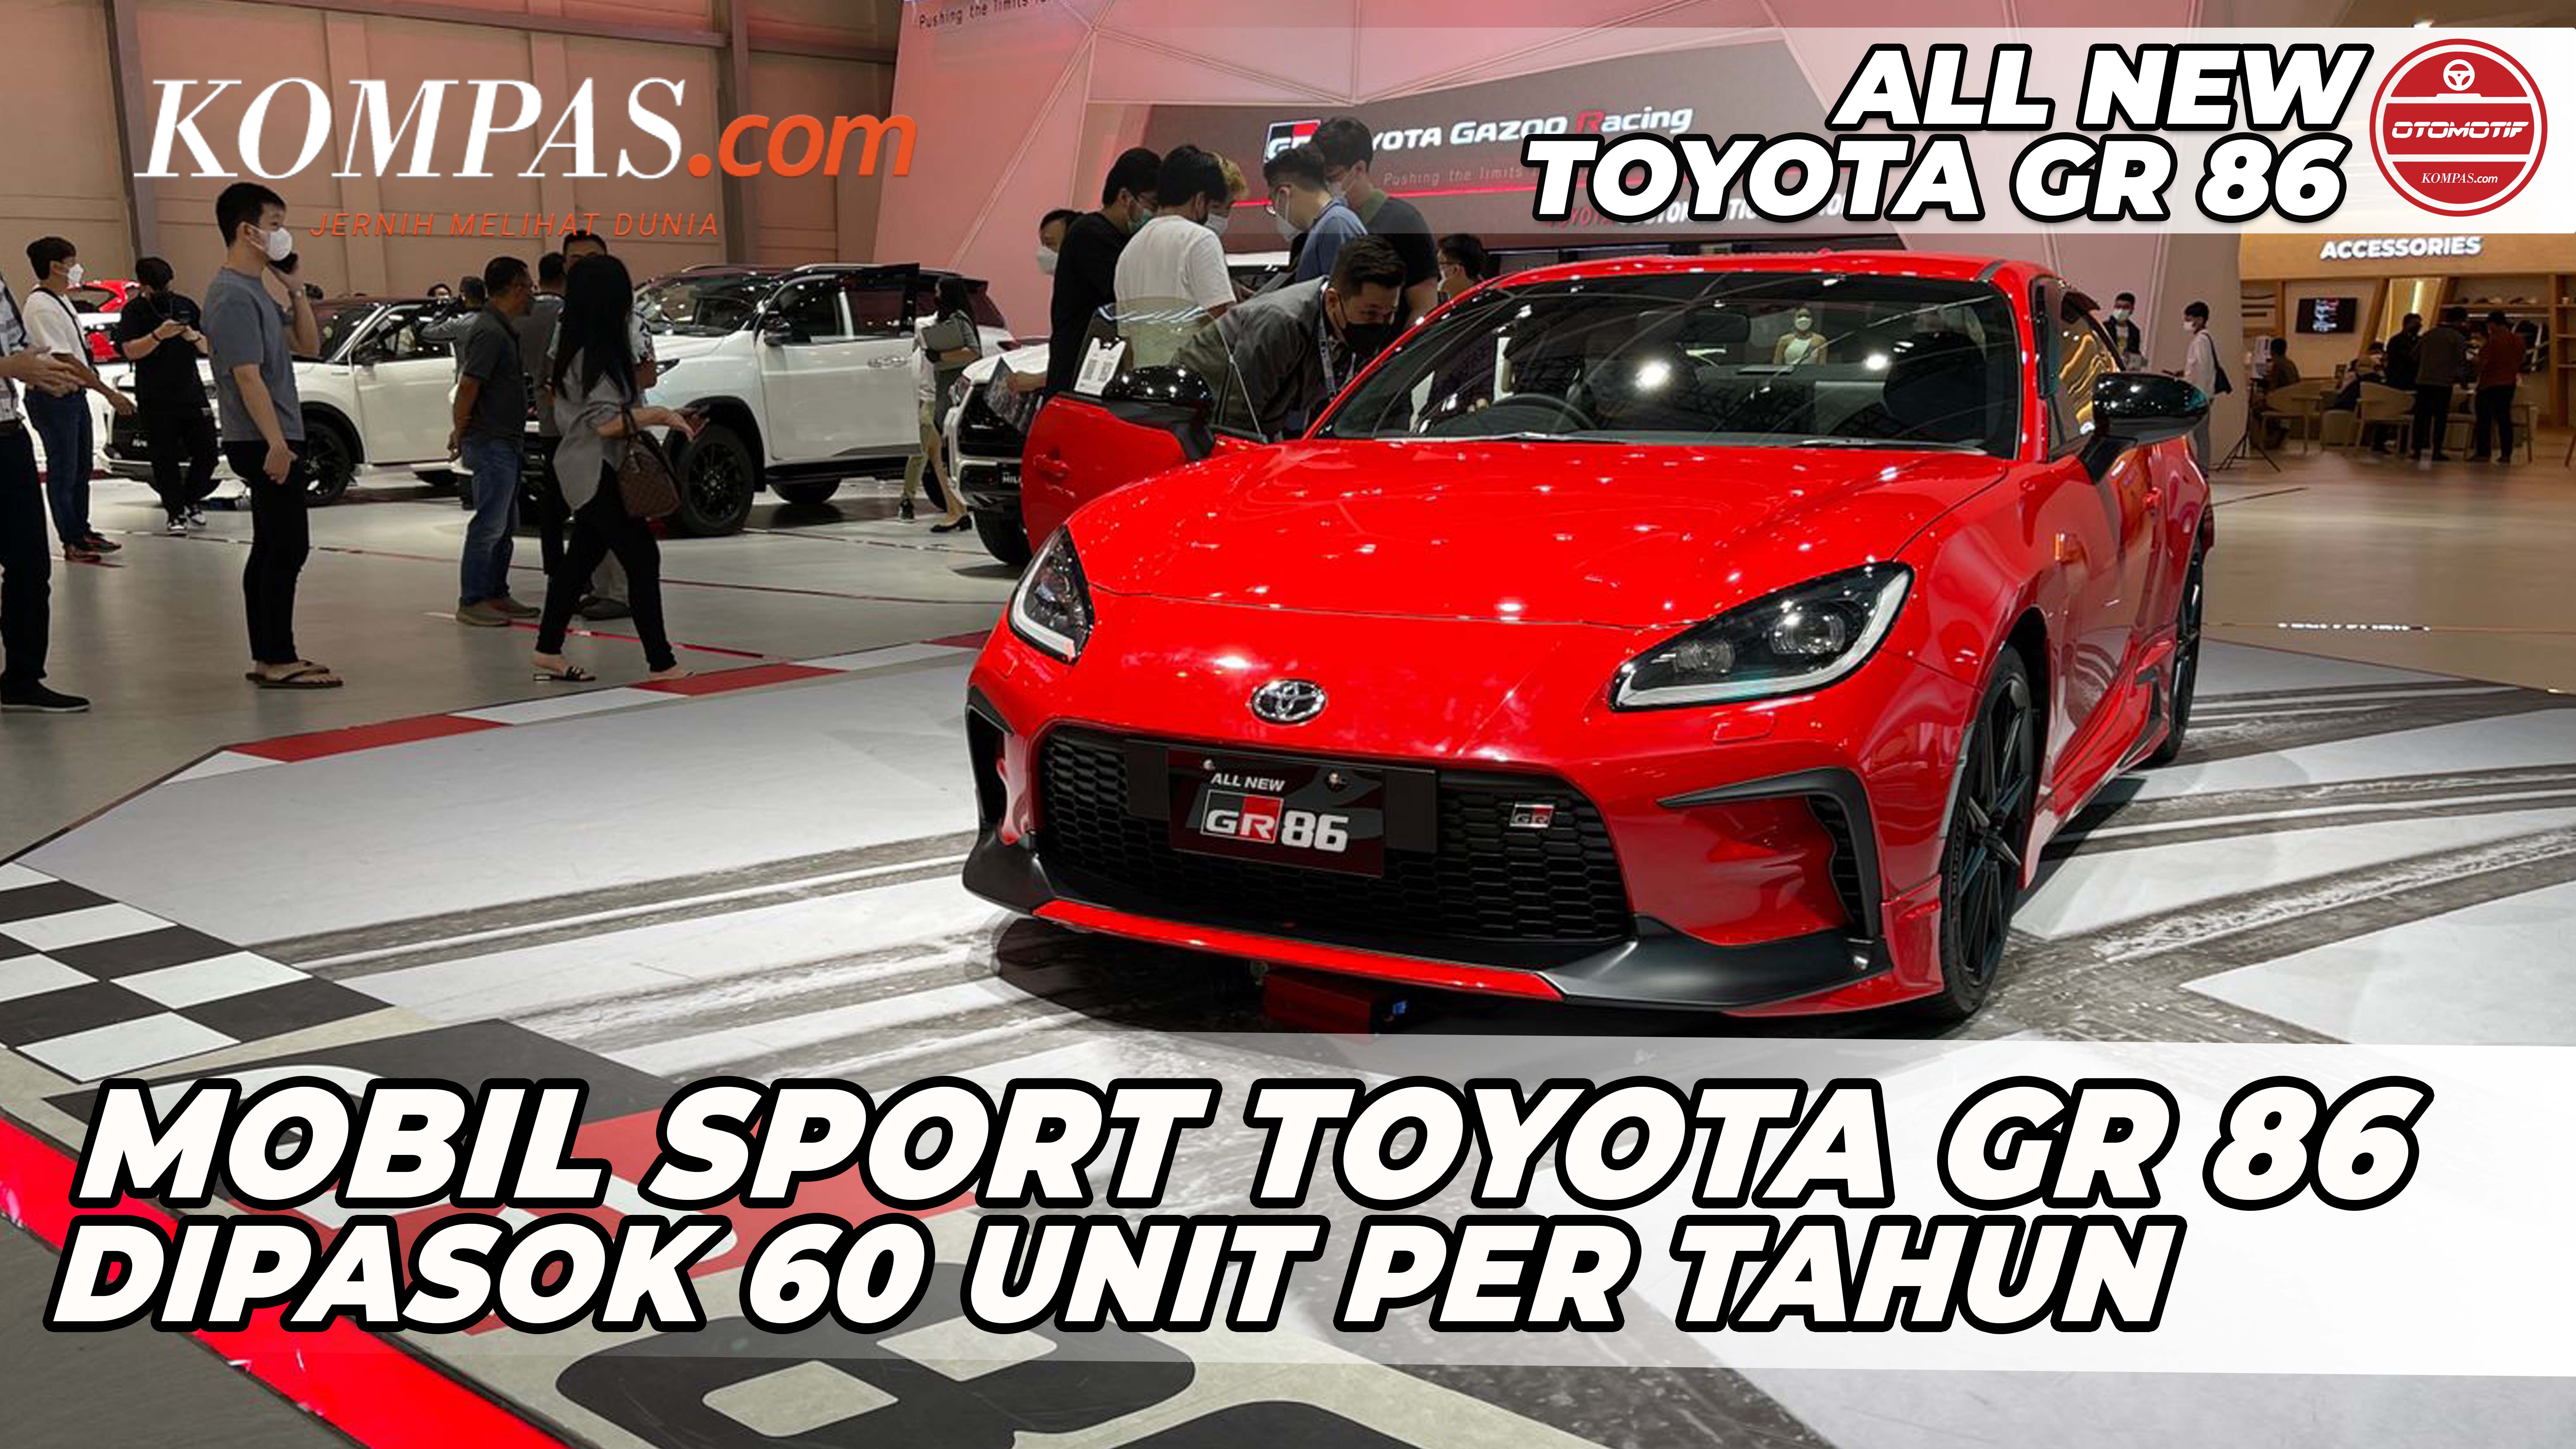 FIRST IMPRESSION | TOYOTA GR 86 | Mobil Sport Toyota 86 GR Dipasok 60 Unit per Tahun